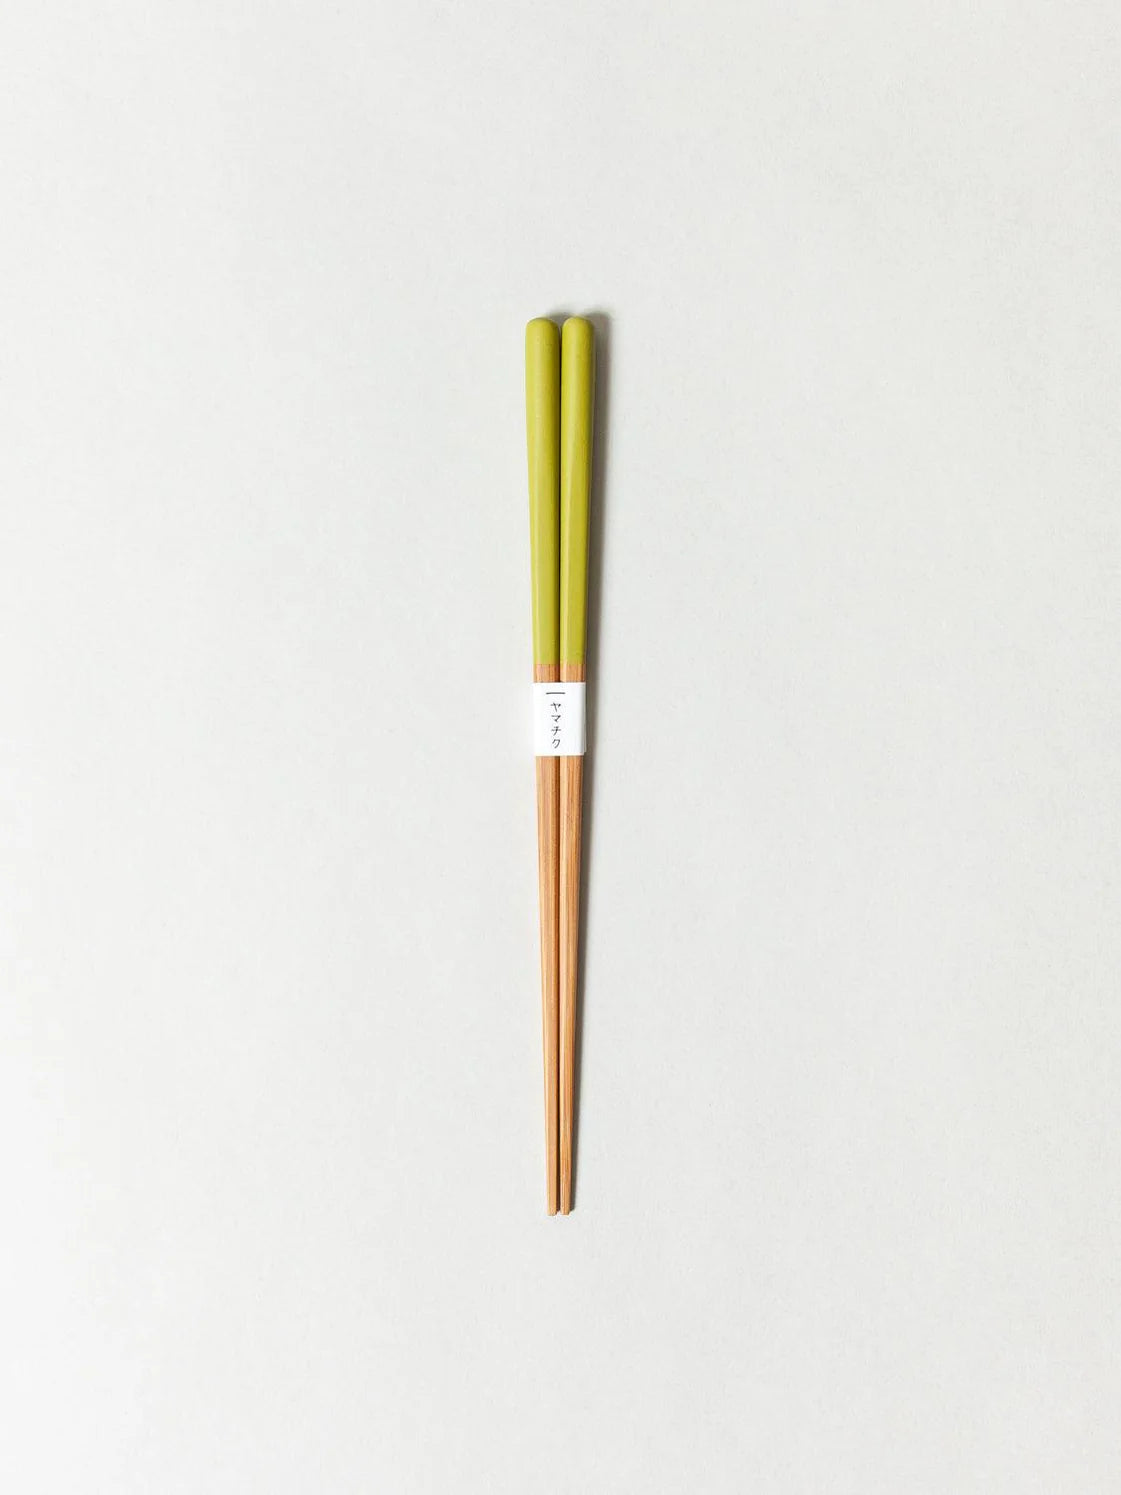 Susu Bamboo Chopsticks - OLIVE